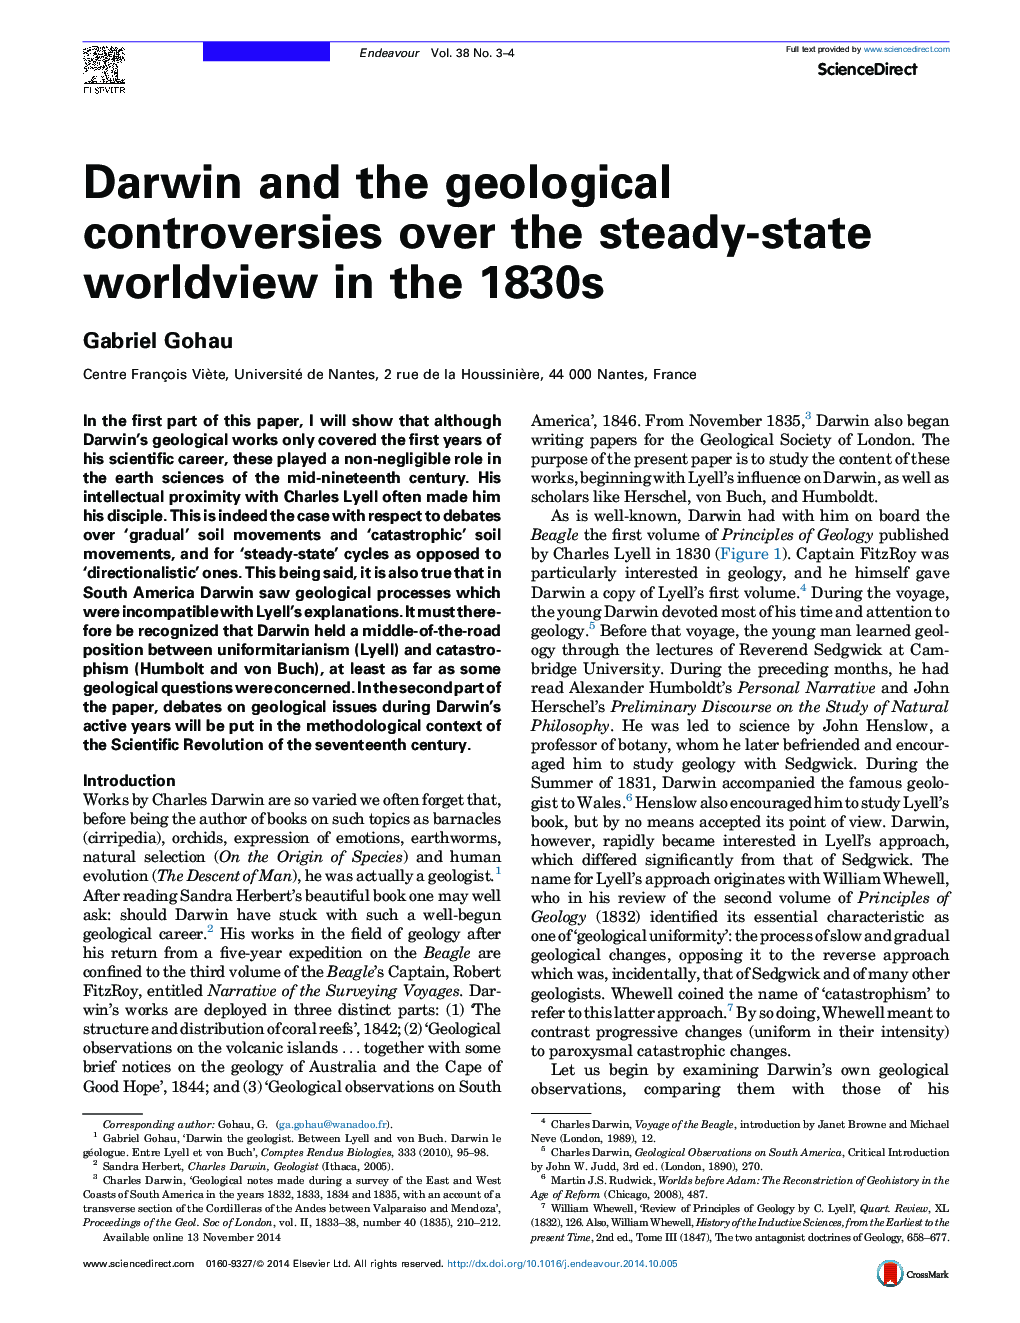 داروین و اختلافات زمین شناختی در مورد جهان بینی جهان پایدار در دهه 1830 